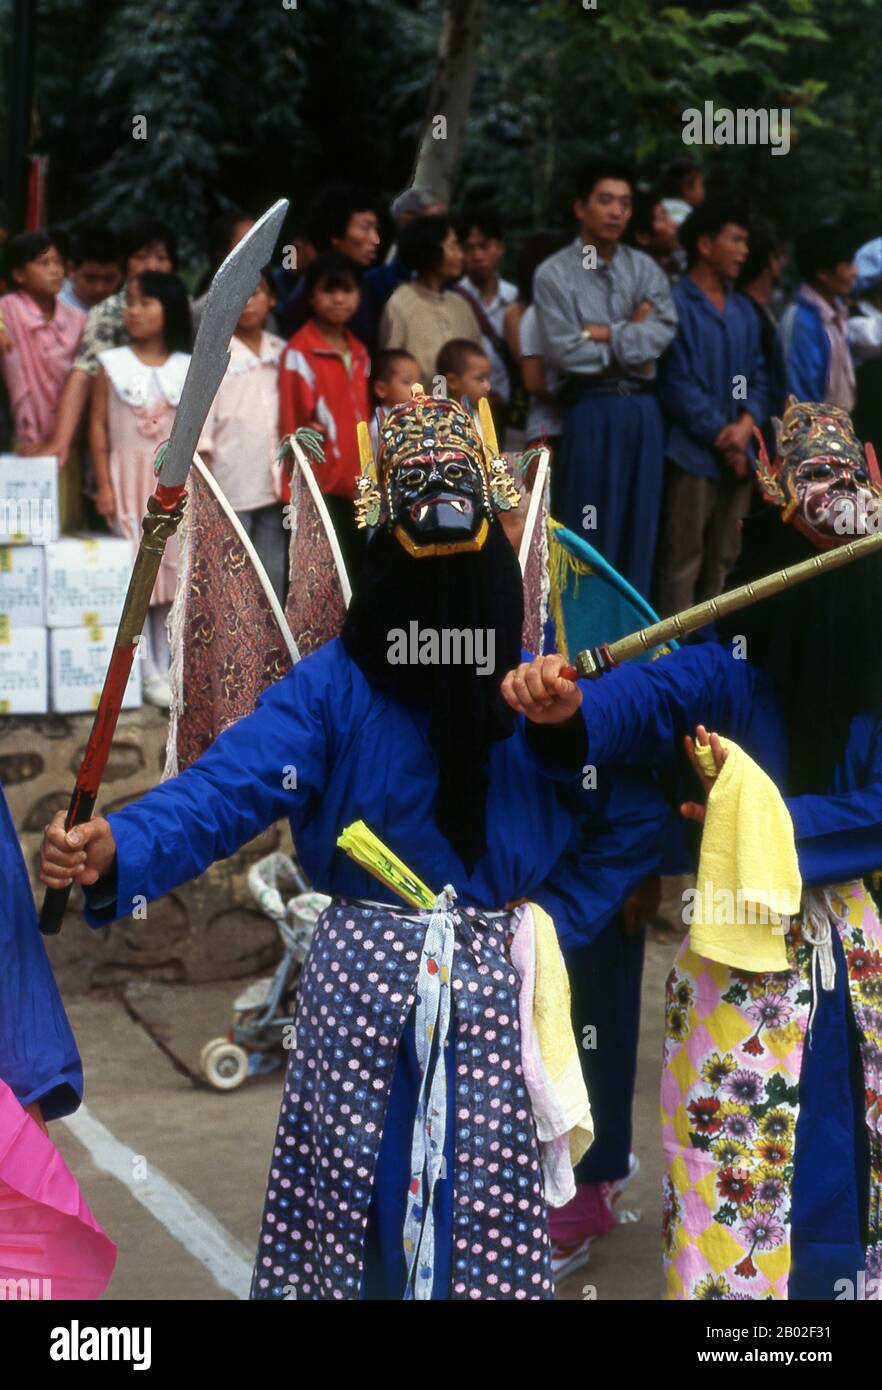 I Miao sono un gruppo di persone linguisticamente e culturalmente legate, riconosciuto dal governo della Repubblica Popolare Cinese come uno dei 55 gruppi ufficiali di minoranza. Miao è un termine cinese e non riflette le auto-designazioni dei sottogruppi di componenti, che includono (con alcune varianti di ortografia) Hmong, Hmu, UN Hmao e Kho (Qho) Xiong. Il Miao vive principalmente nella Cina meridionale, nelle province di Guizhou, Hunan, Yunnan, Sichuan, Guangxi, Hainan, Guangdong e Hubei. Alcuni membri dei sottogruppi di Miao, in particolare gli Hmong, sono migrati dalla Cina verso il sud-est Come Foto Stock